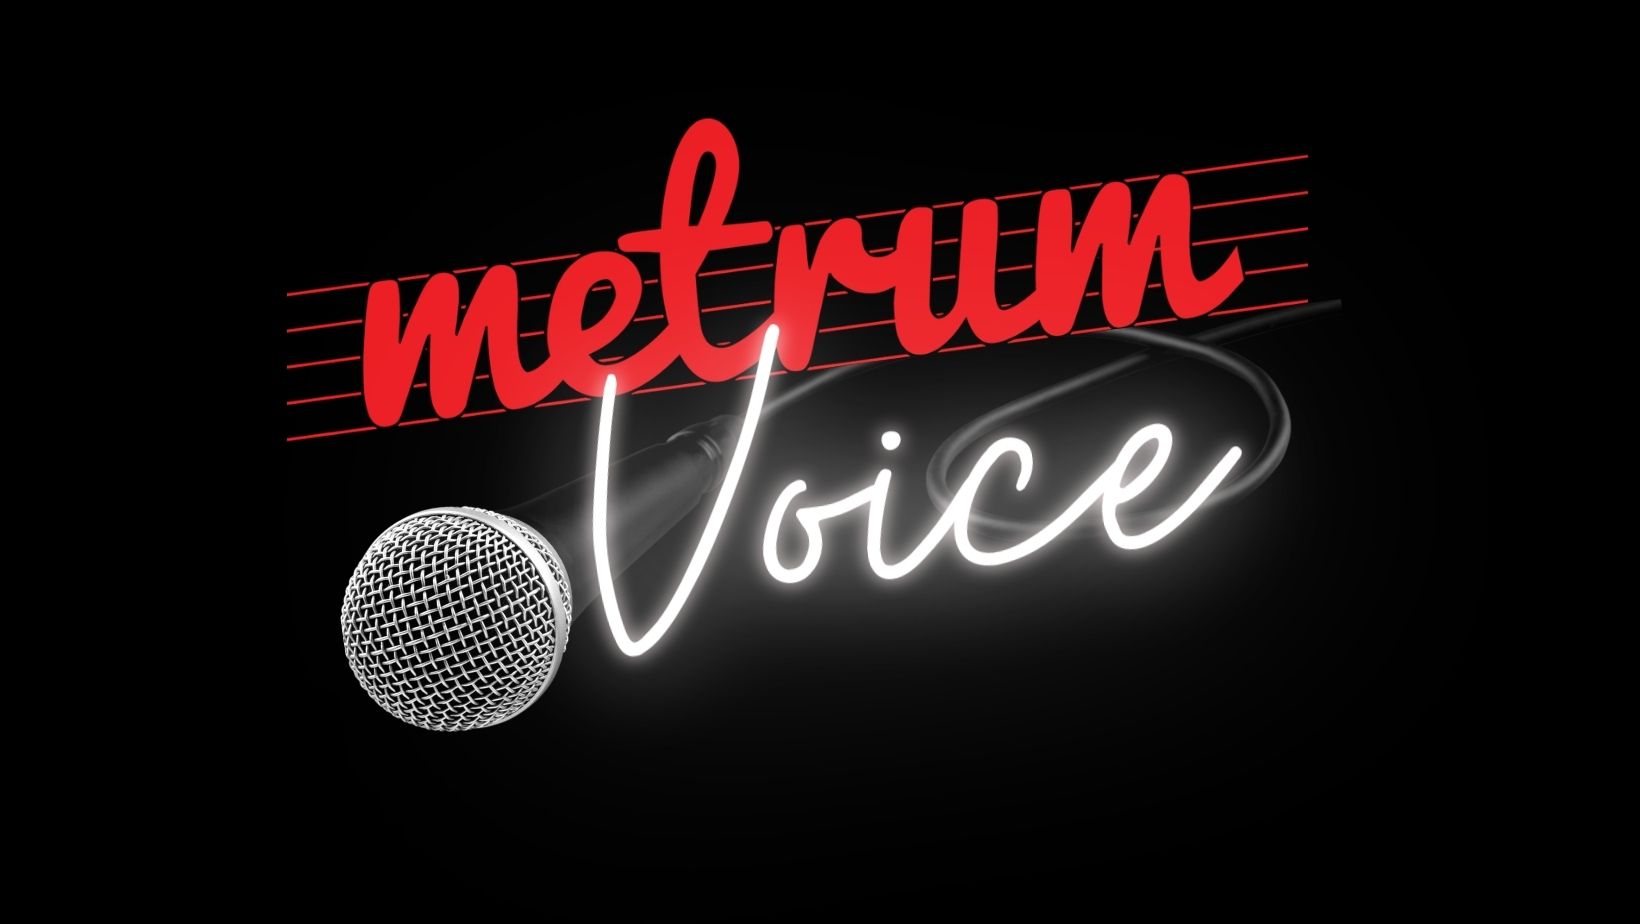  Metrum Voice logo